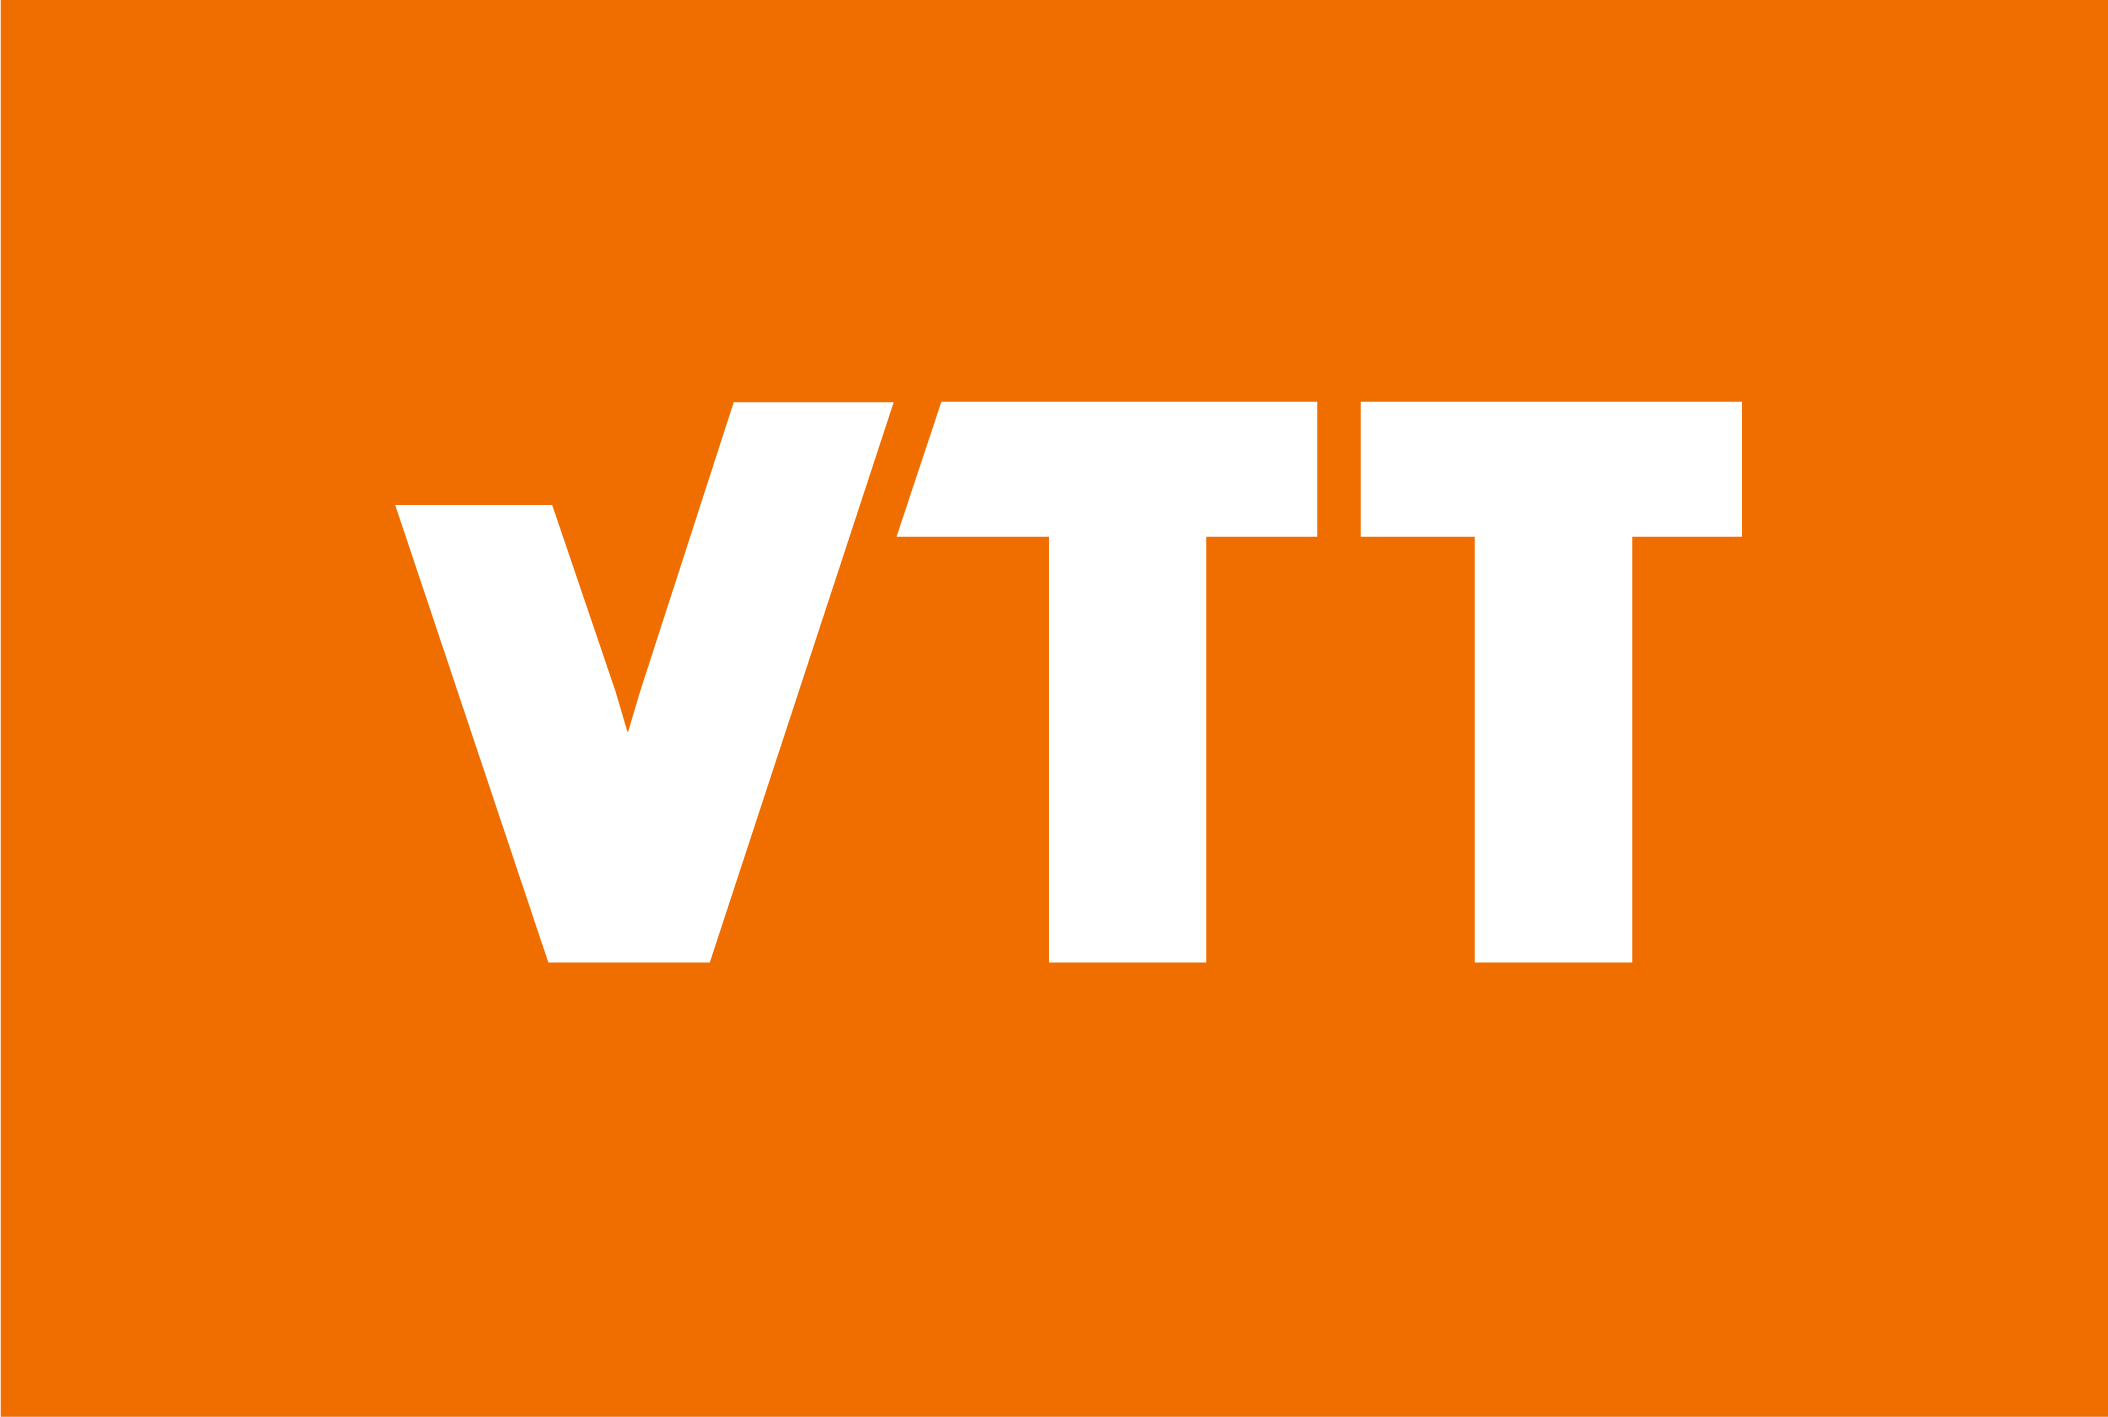 vtt_orange_logo.png (21 KB)